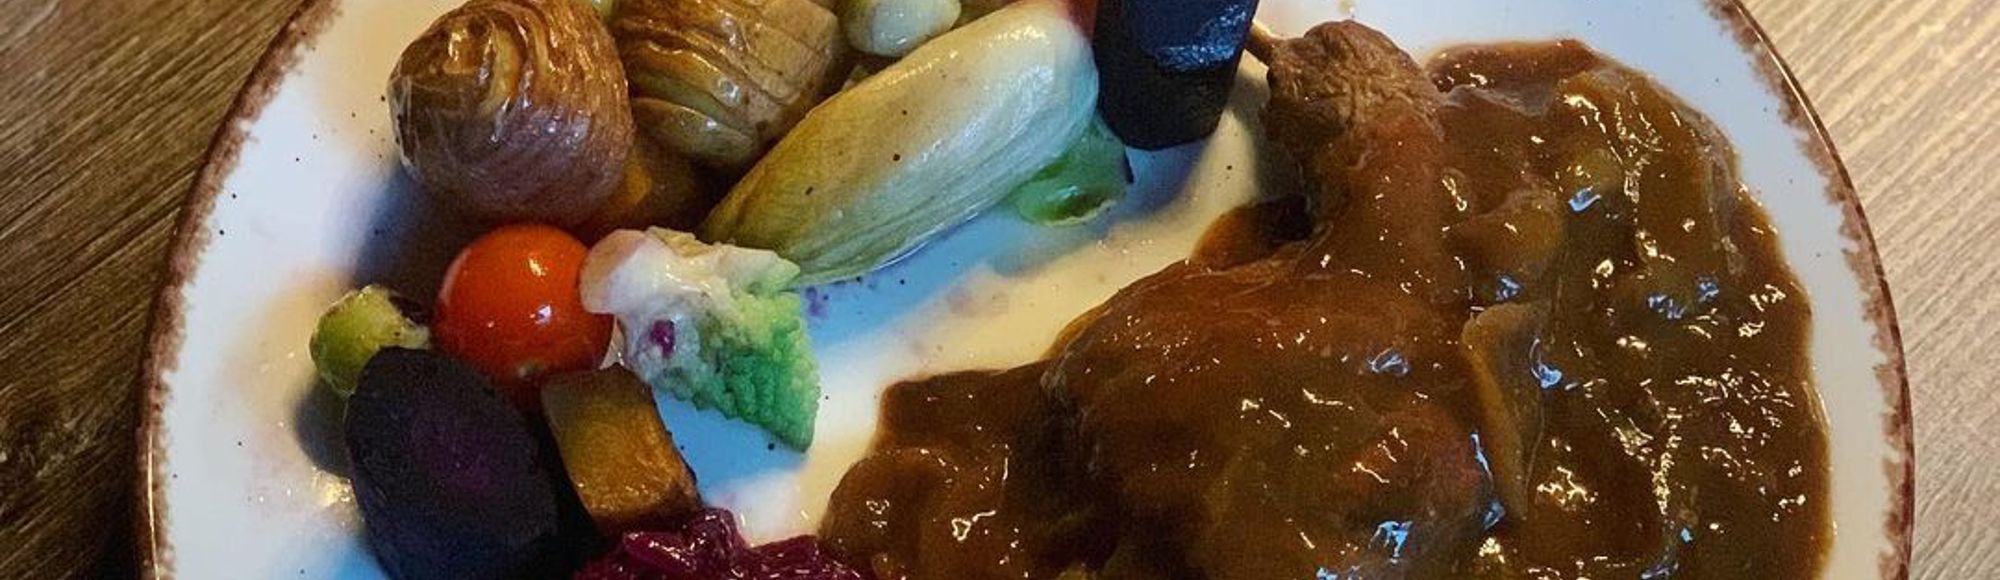 Limburgse Knien in 't Zoer op een bord, geserveerd met aardappel, rode kool en diverse groenten.